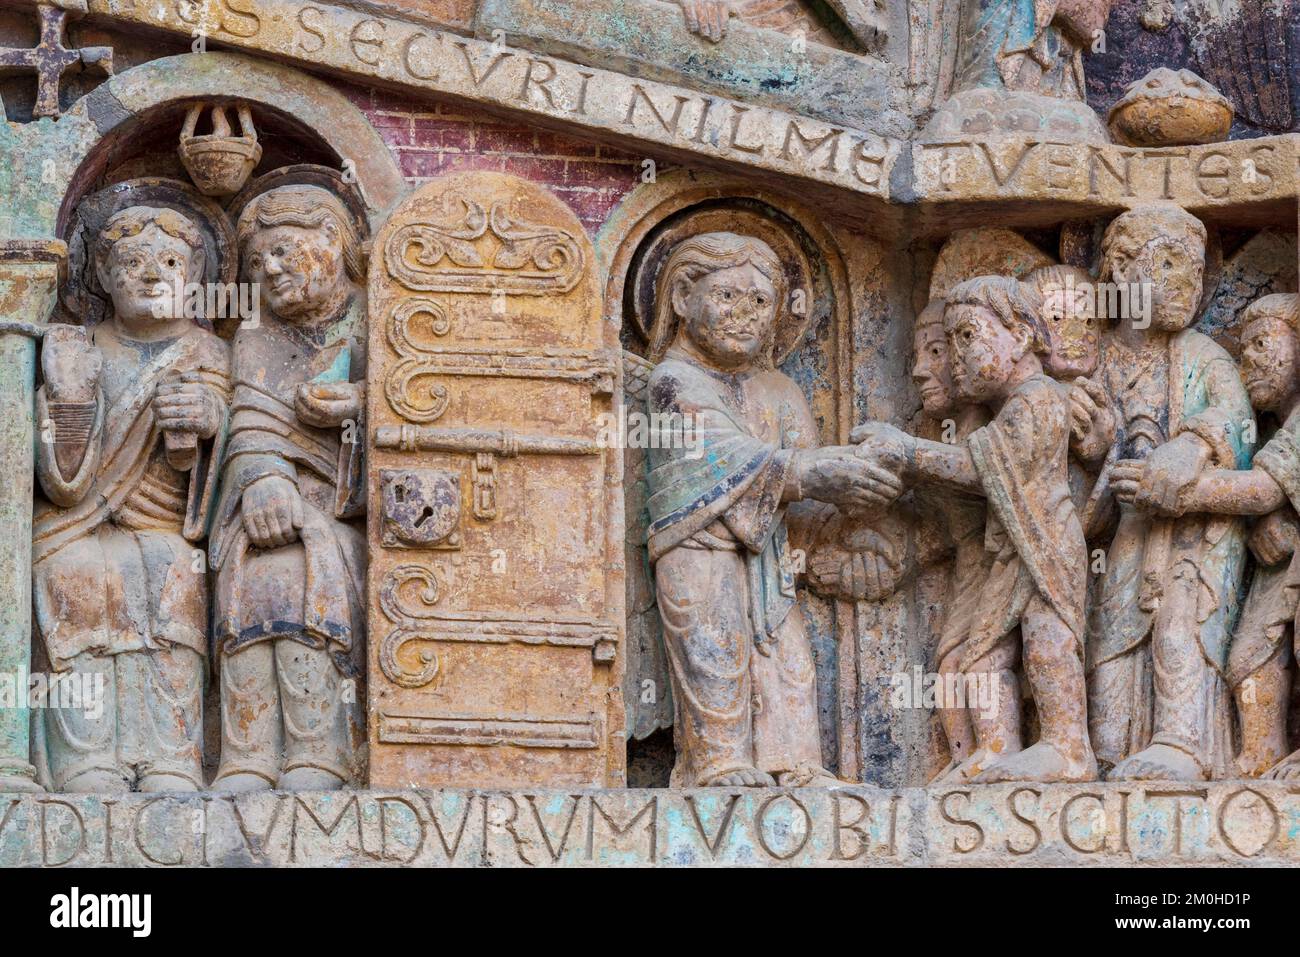 Frankreich, Aveyron, Conques, eines der schönsten Dörfer Frankreichs, Bühne auf dem Weg nach Compostela, Sainte Foy Romanesque Abbey, UNESCO-Weltkulturerbe, Tympanum des letzten Gerichts Stockfoto